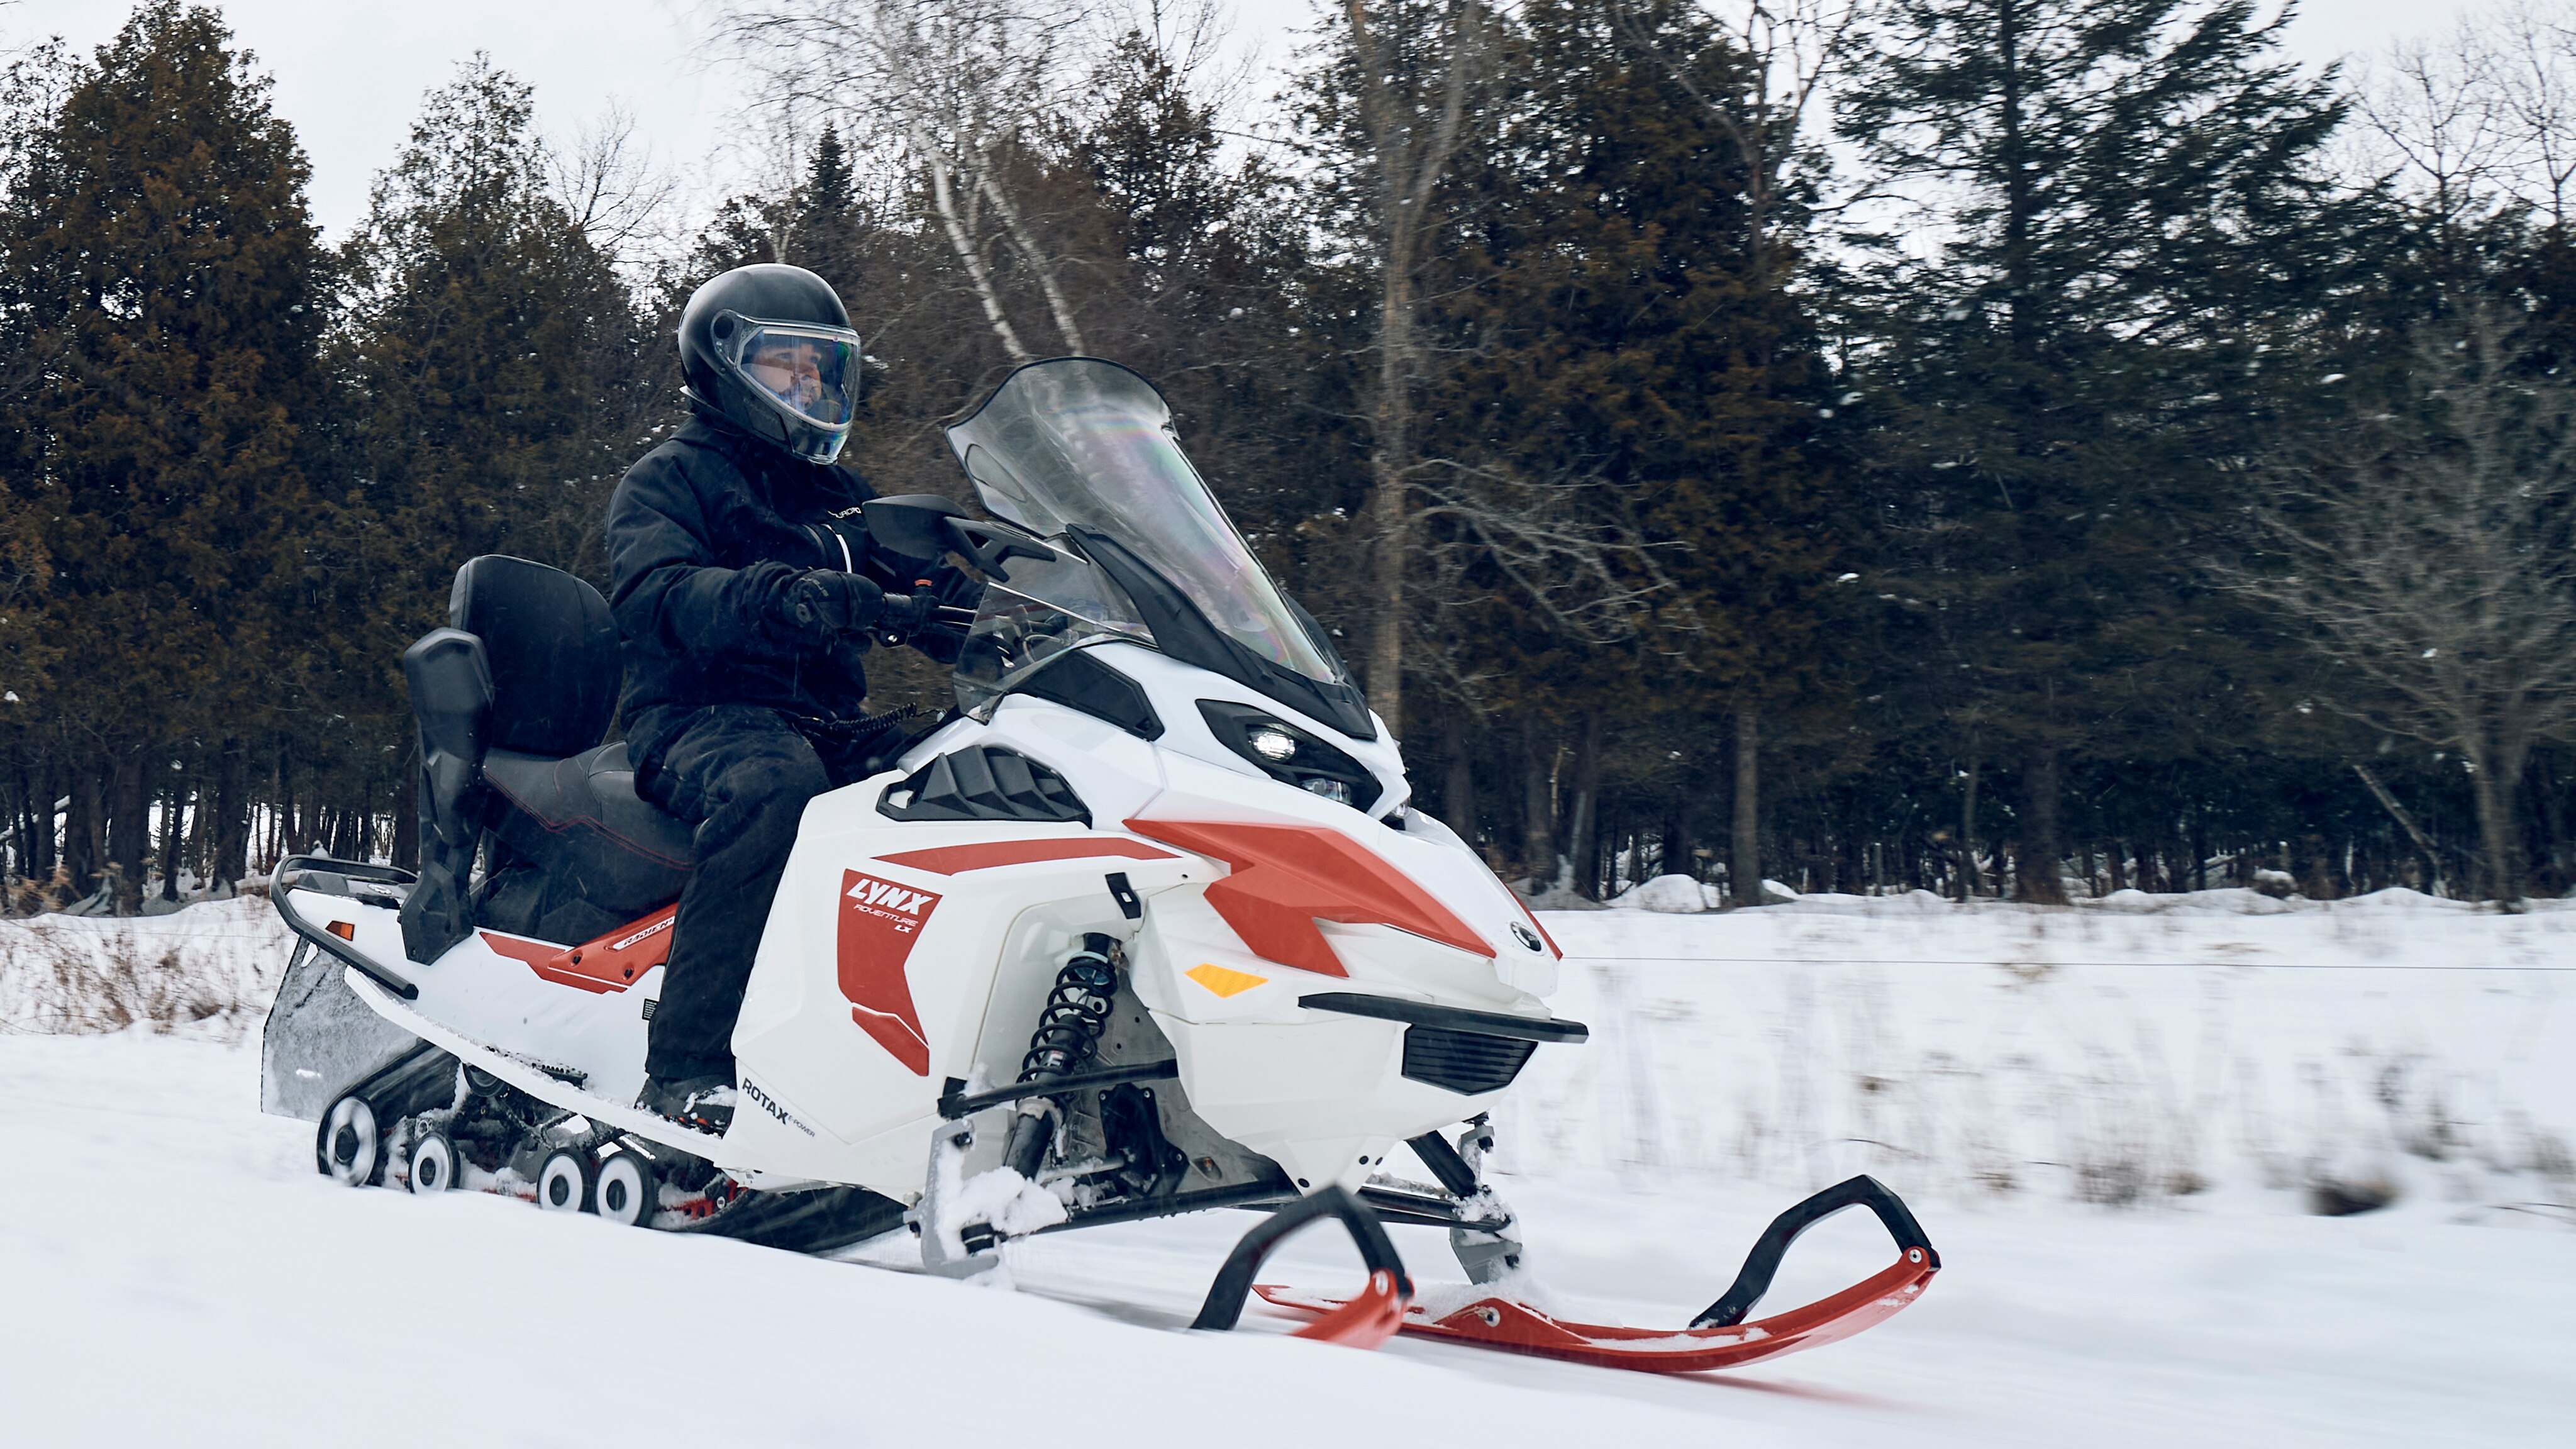 Mann som kjører Lynx elektrisk snøscooter på sti